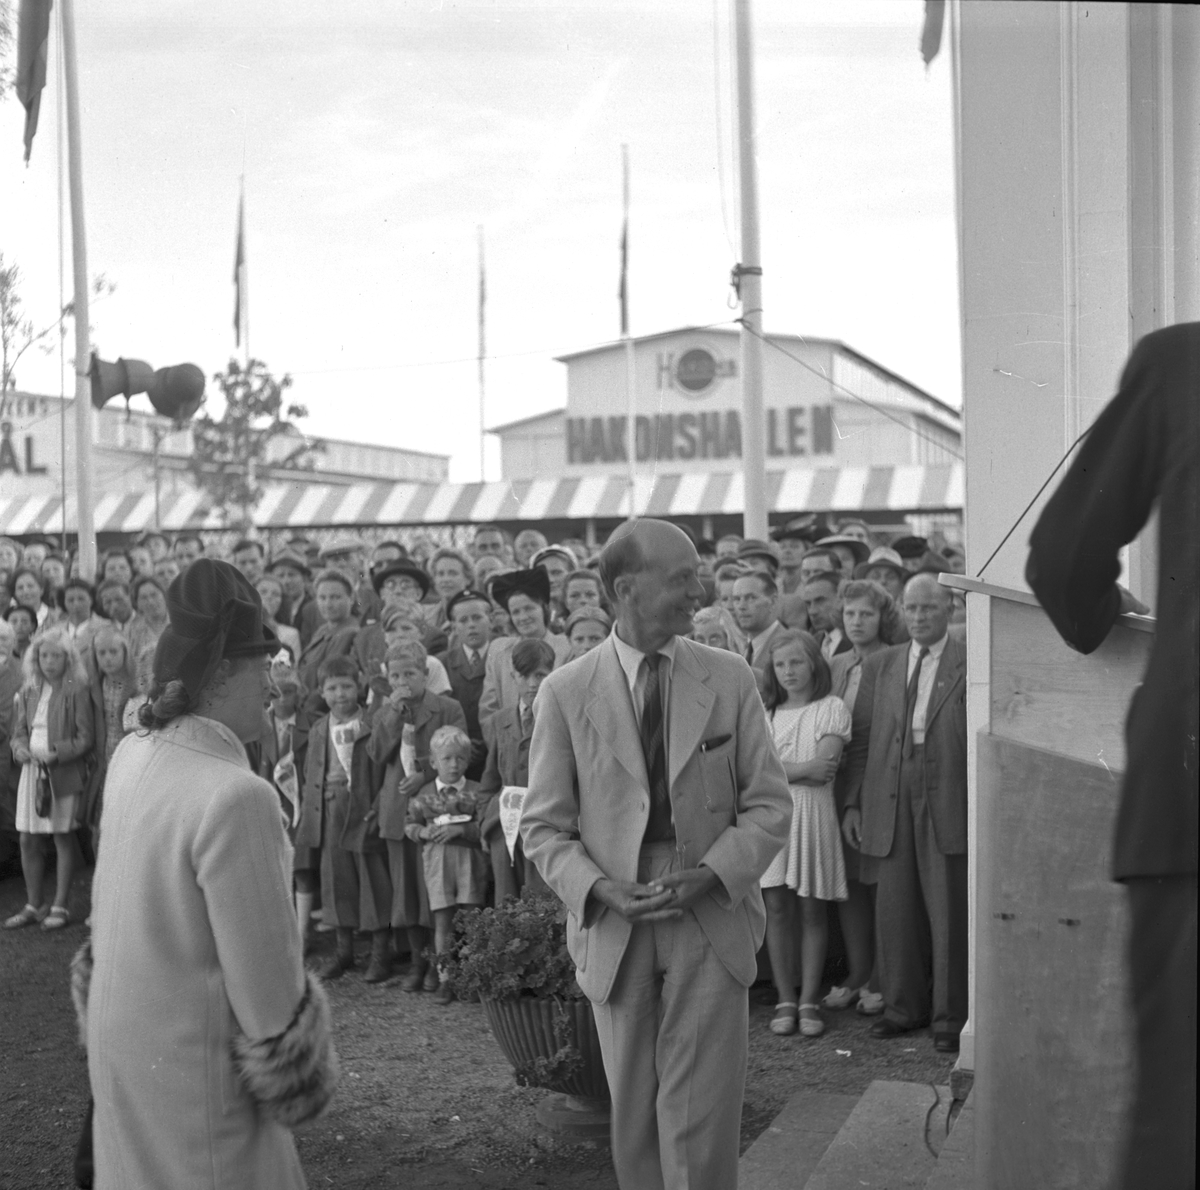 Gävleutställningen 1946
arrangerades 21 juni - 4 augusti. En utställning med anledning av Gävle stads 500-årsjubileum. På 350.000 kv.m. visade 530 utställare sina produkter. Utställningen besöktes av ca 760.000 personer.

